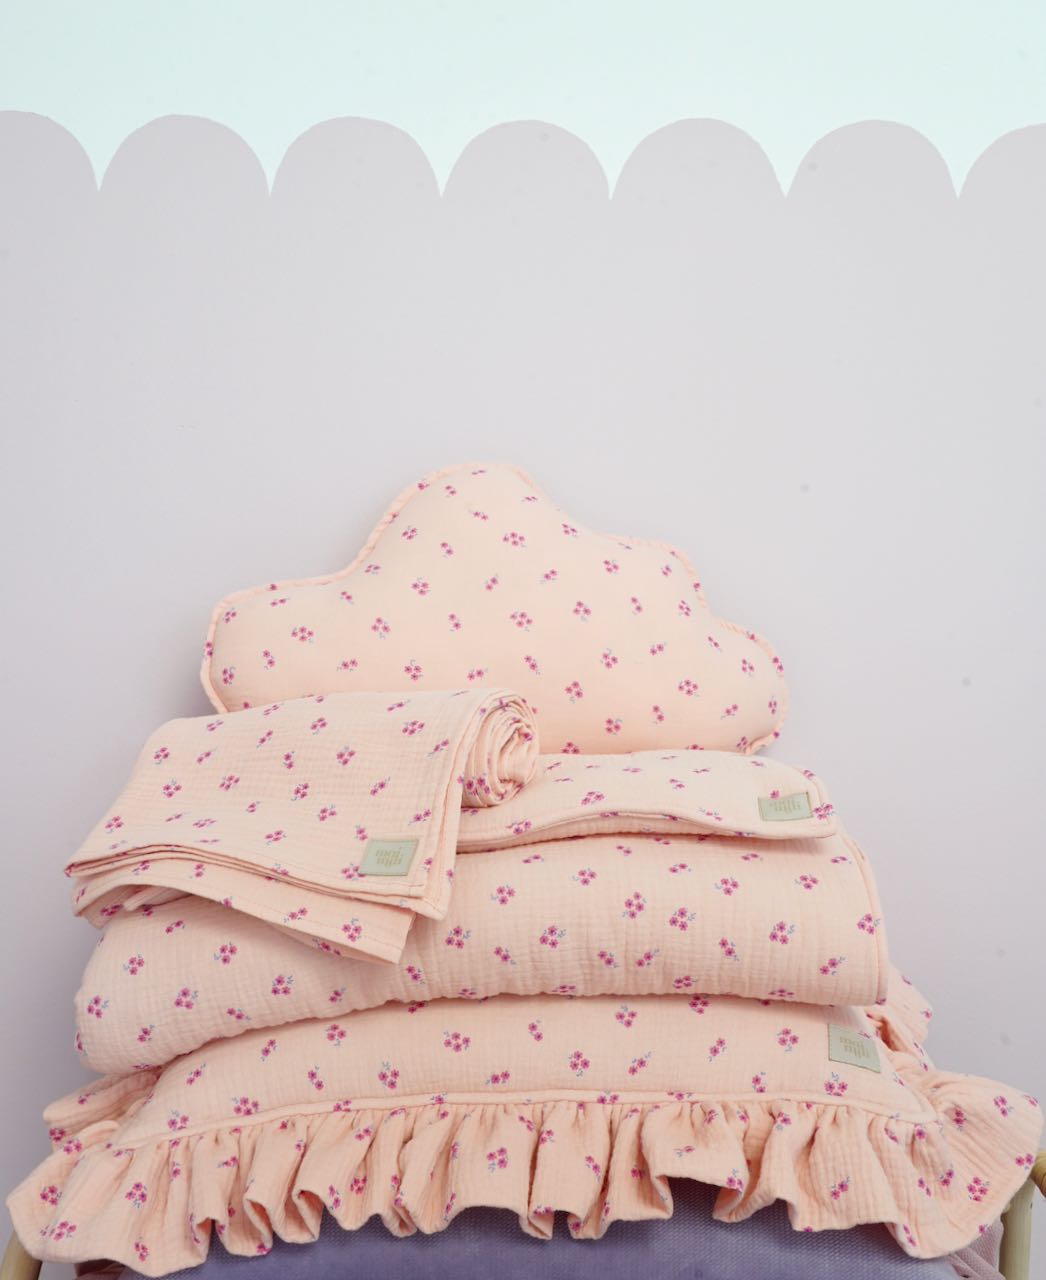 Muslin "Pink Forget-Me-Not" Cloud Pillow